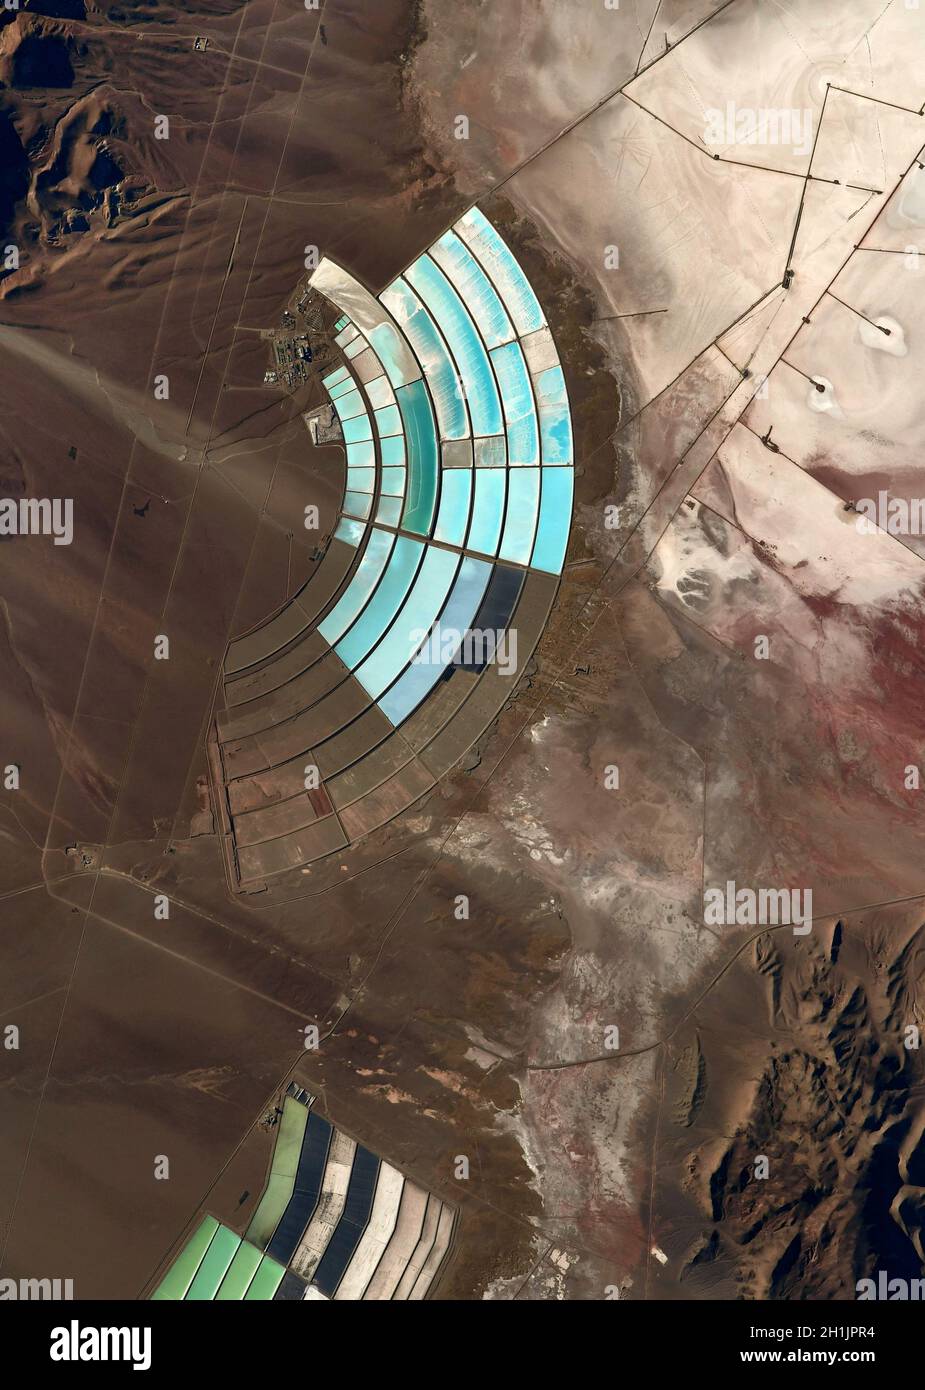 Une vue de la Terre depuis la Station spatiale internationale : réservoirs minéraux, Andes Pérou/Bolivie.Version optimisée et numériquement améliorée d'une image NASA/ESA.Crédit obligatoire: NASA/ESA/T.Pesquet.NB: Restrictions d'utilisation: Ne pas présenter comme endossement. Banque D'Images